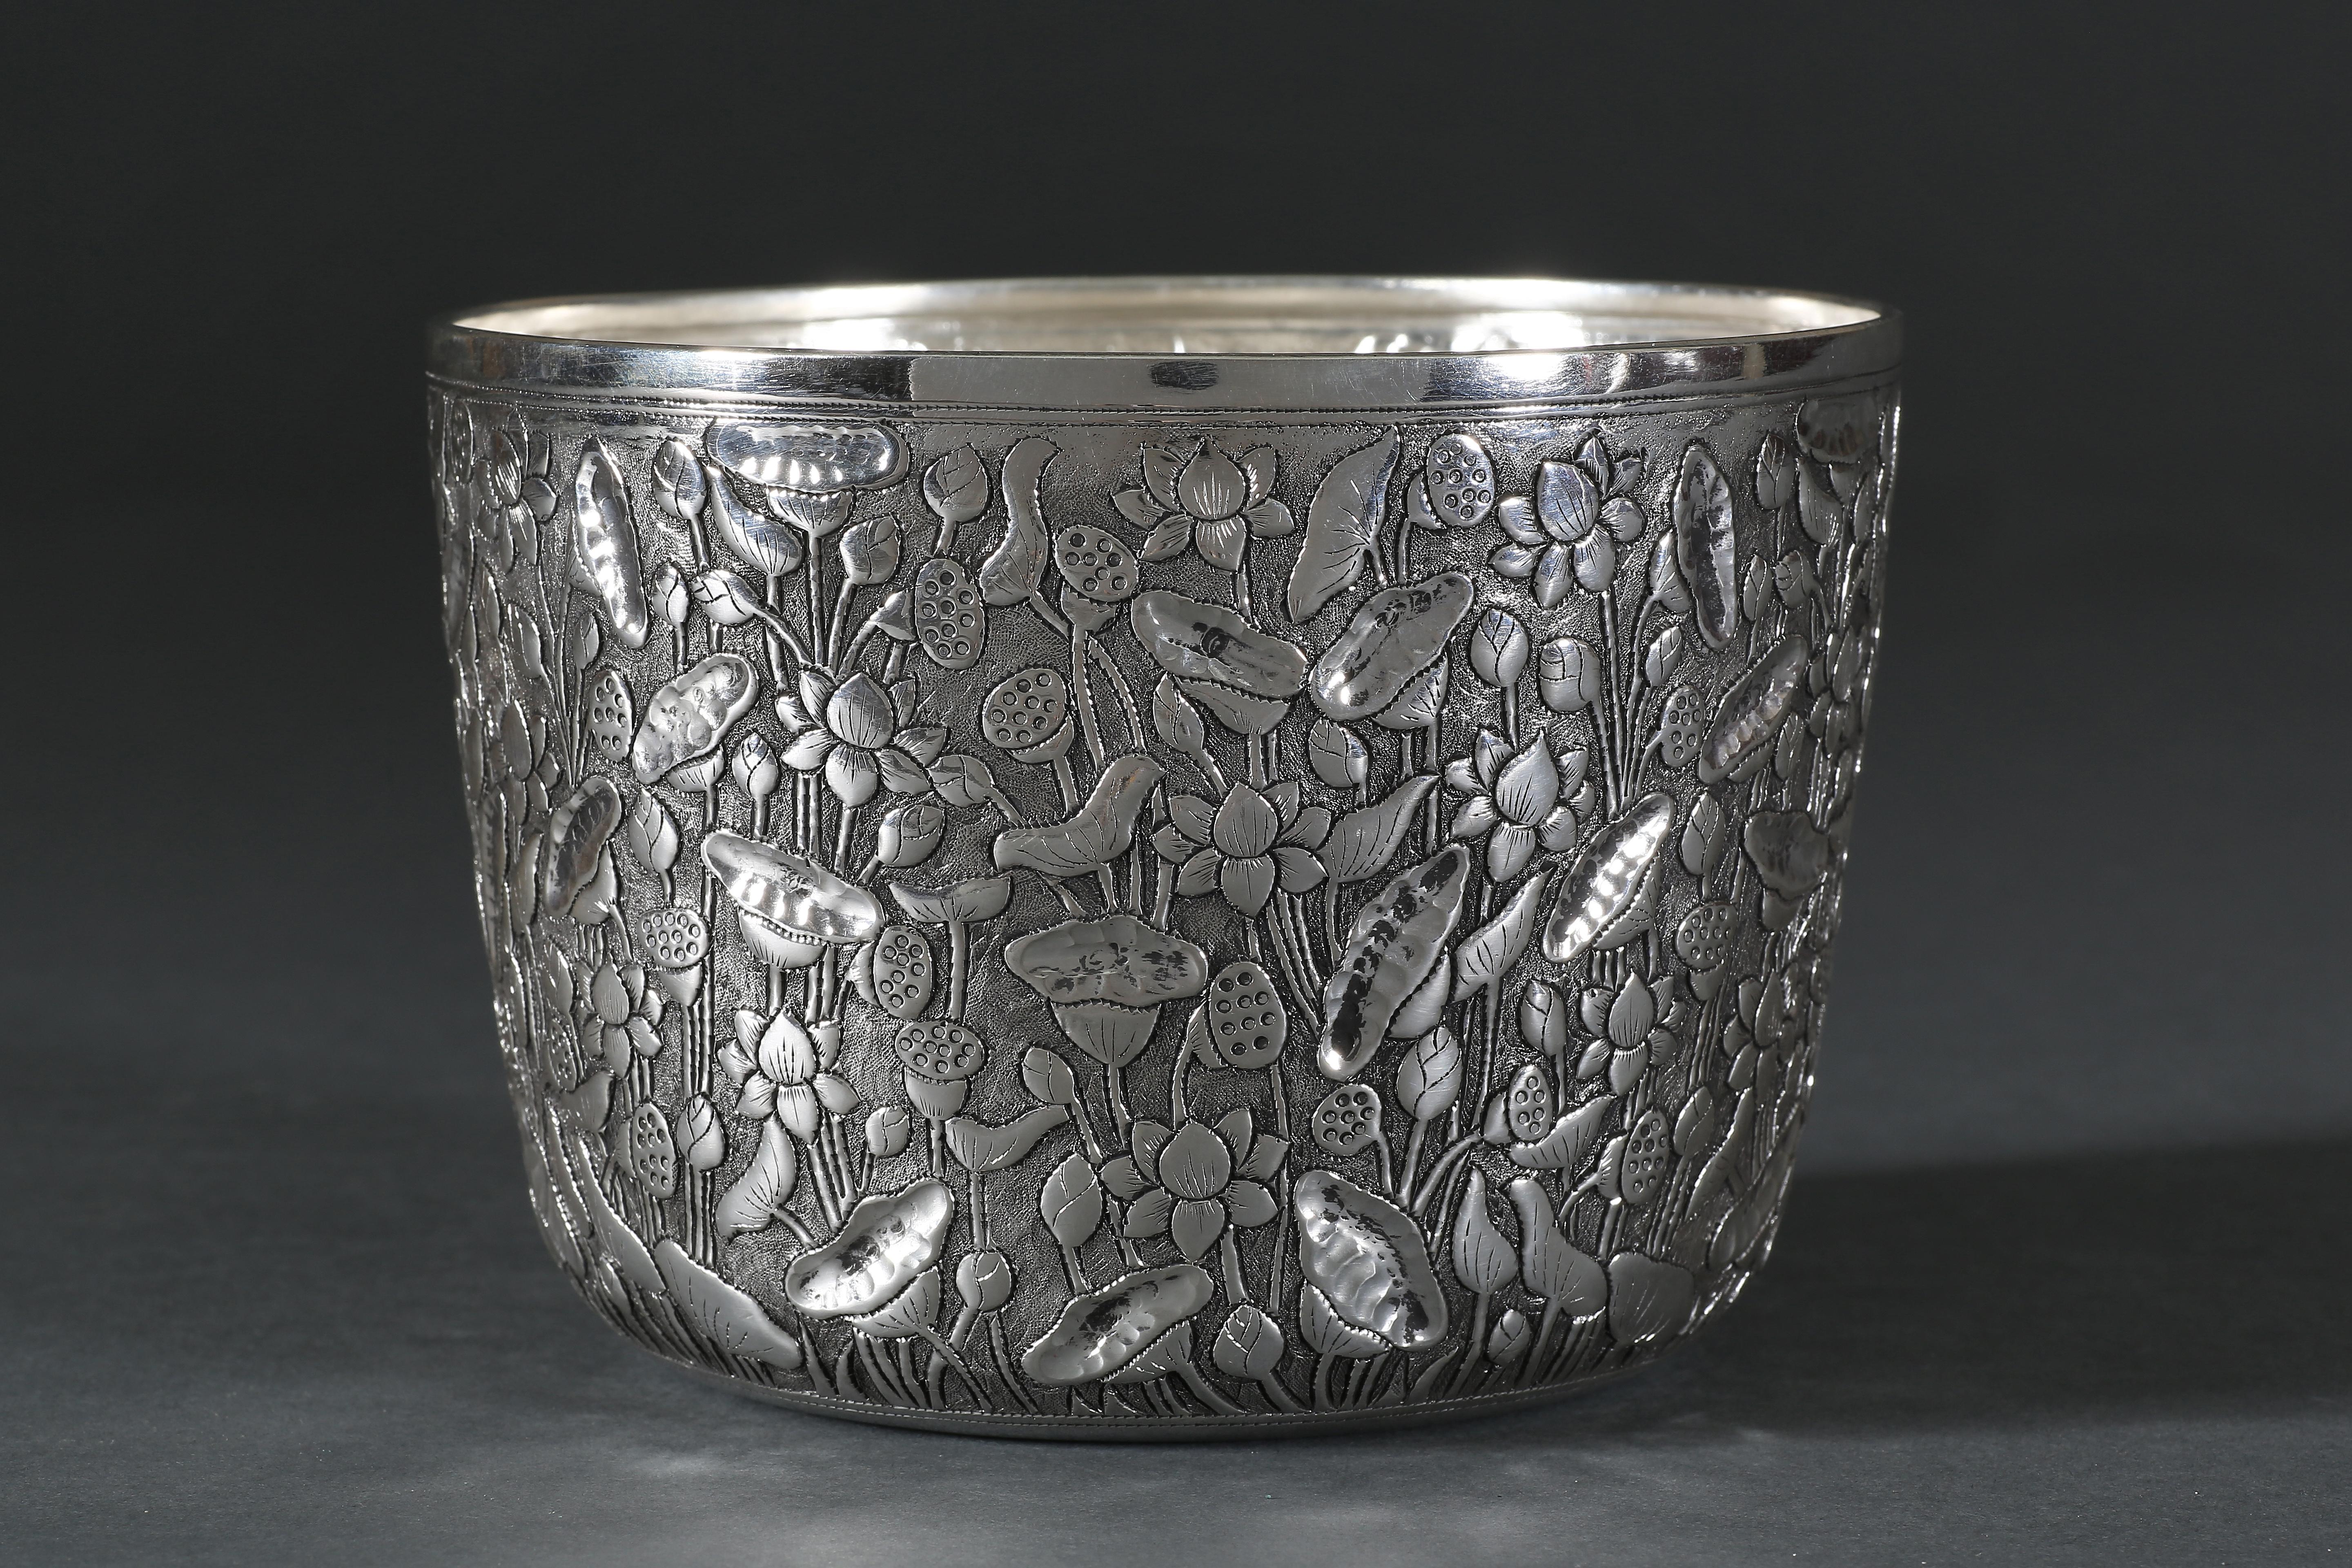 Diese Schale wurde von uns selbst entworfen und ist Teil unserer einzigartigen Kollektion zeitgenössischer, massiver Silberstücke, die von unserem Team aus talentierten südostasiatischen Silberschmieden handgefertigt werden. Die feine